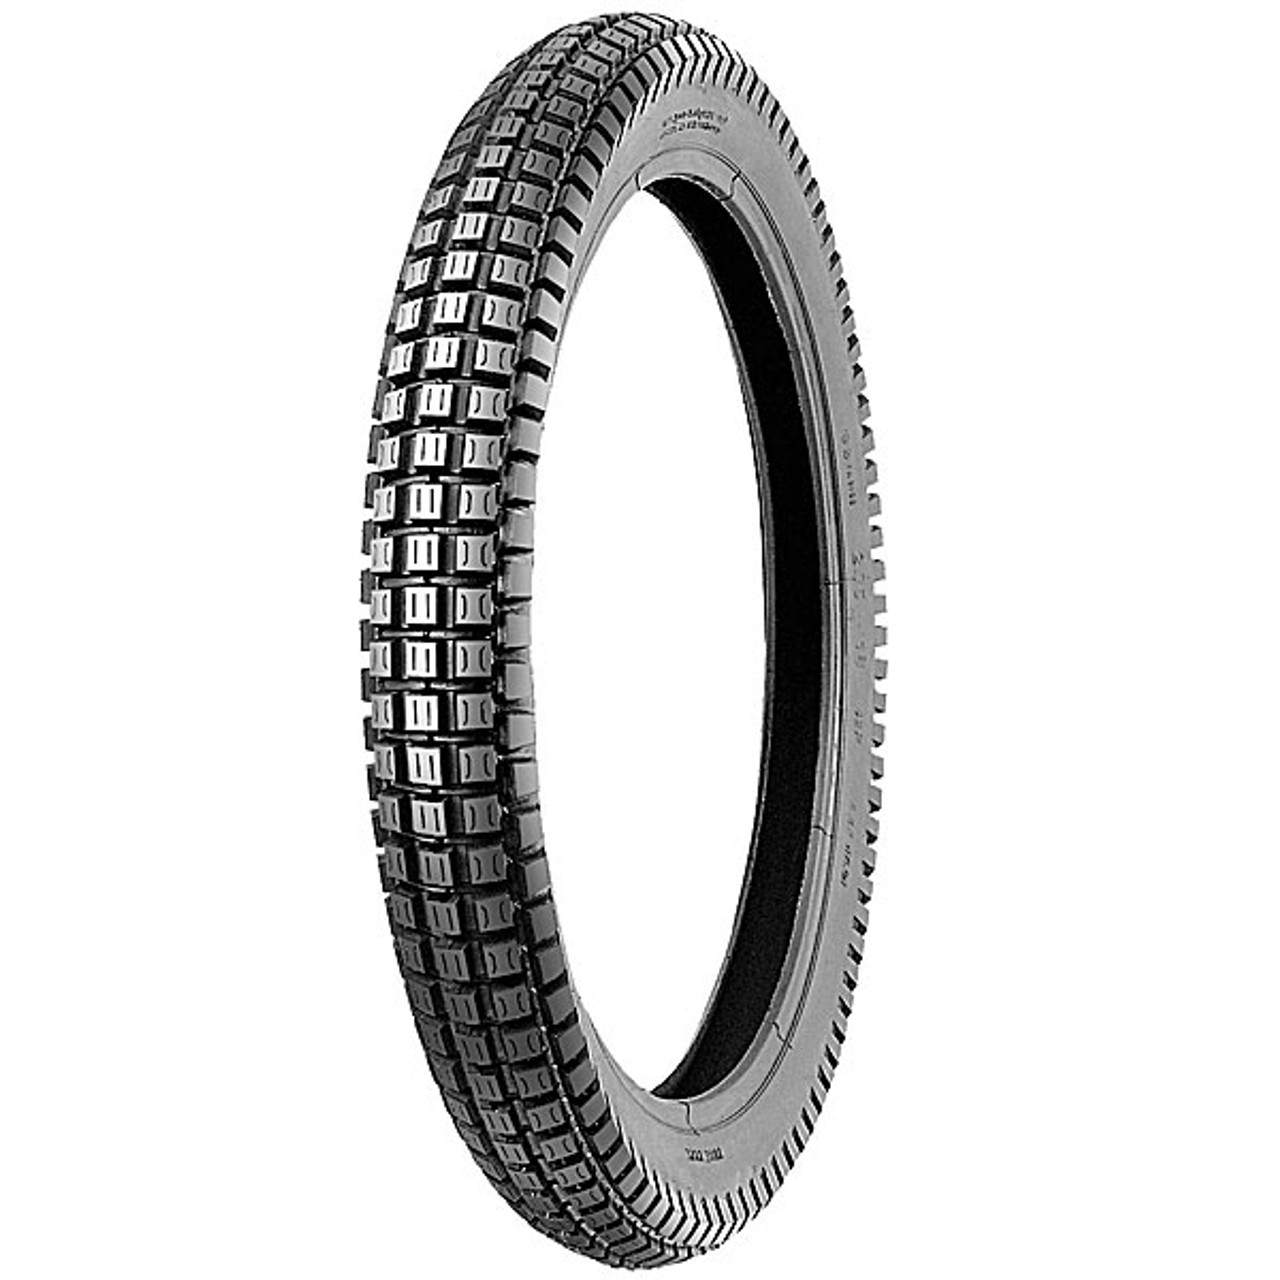 Shinko SR241 3.00 x 16 Trials style tire. 